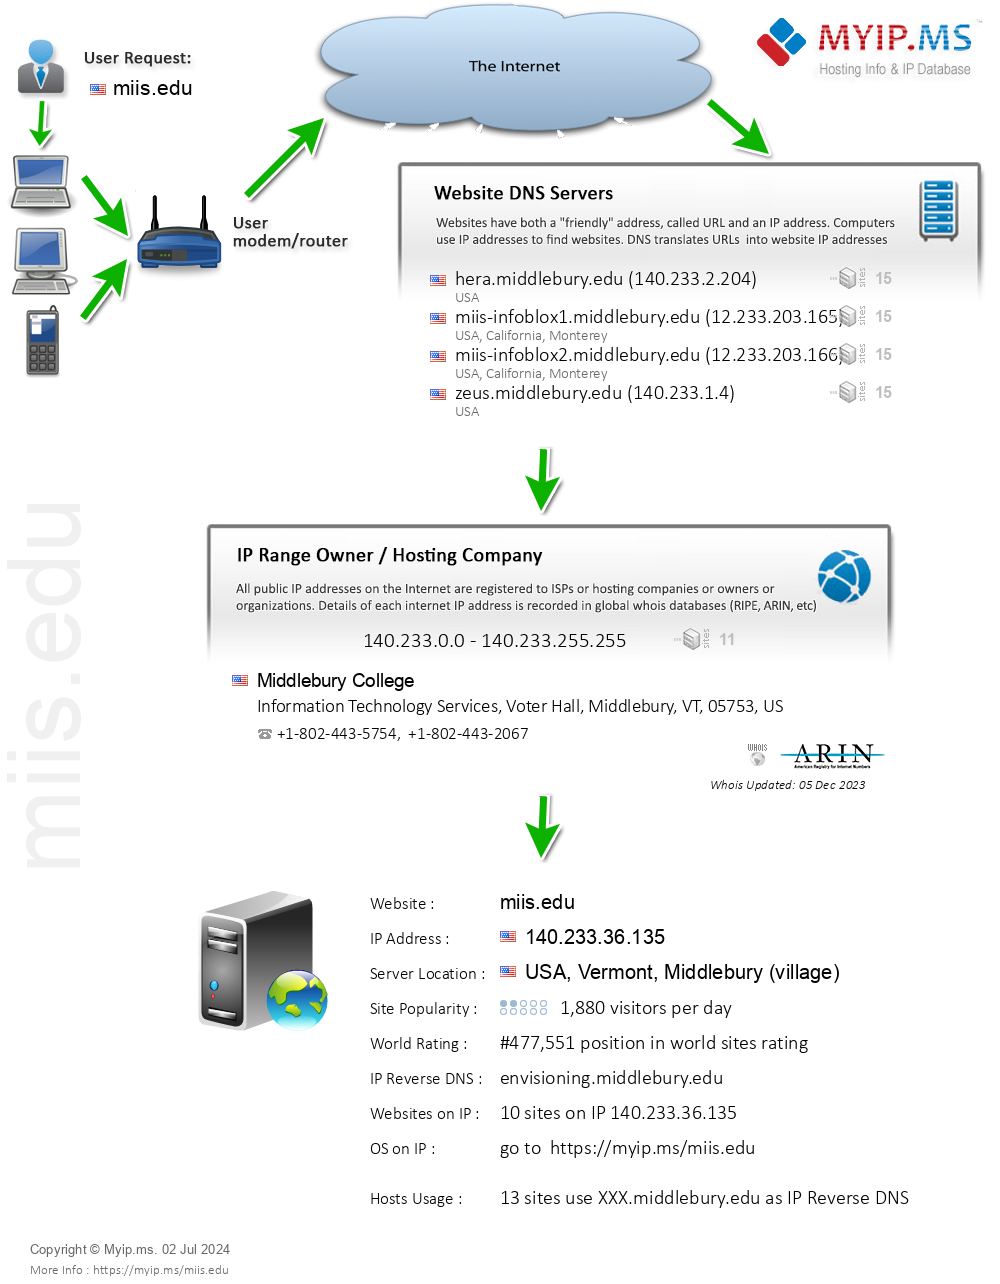 Miis.edu - Website Hosting Visual IP Diagram